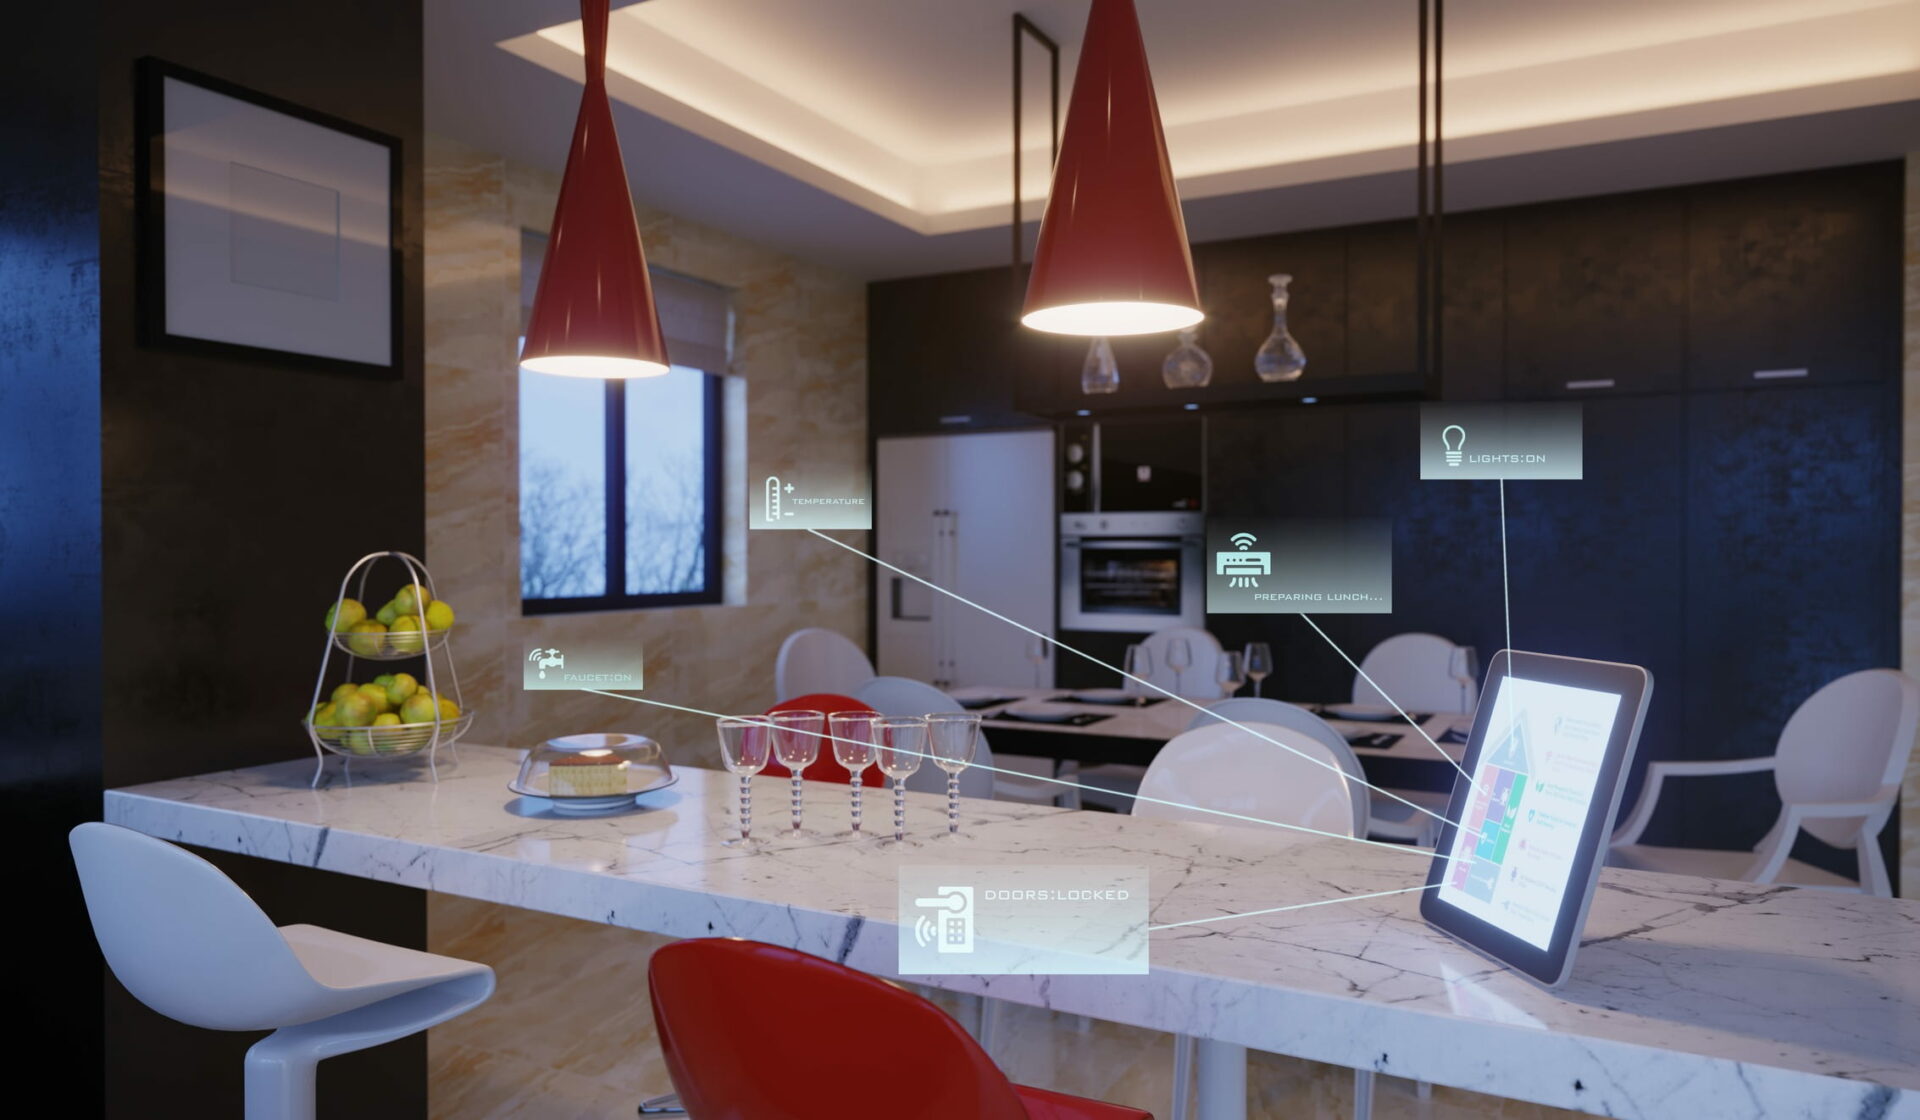 Eine Smart Home Station innerhalb einer Küche und verweise auf Smart Living Anwendungen durch dargestellte Bildicons.